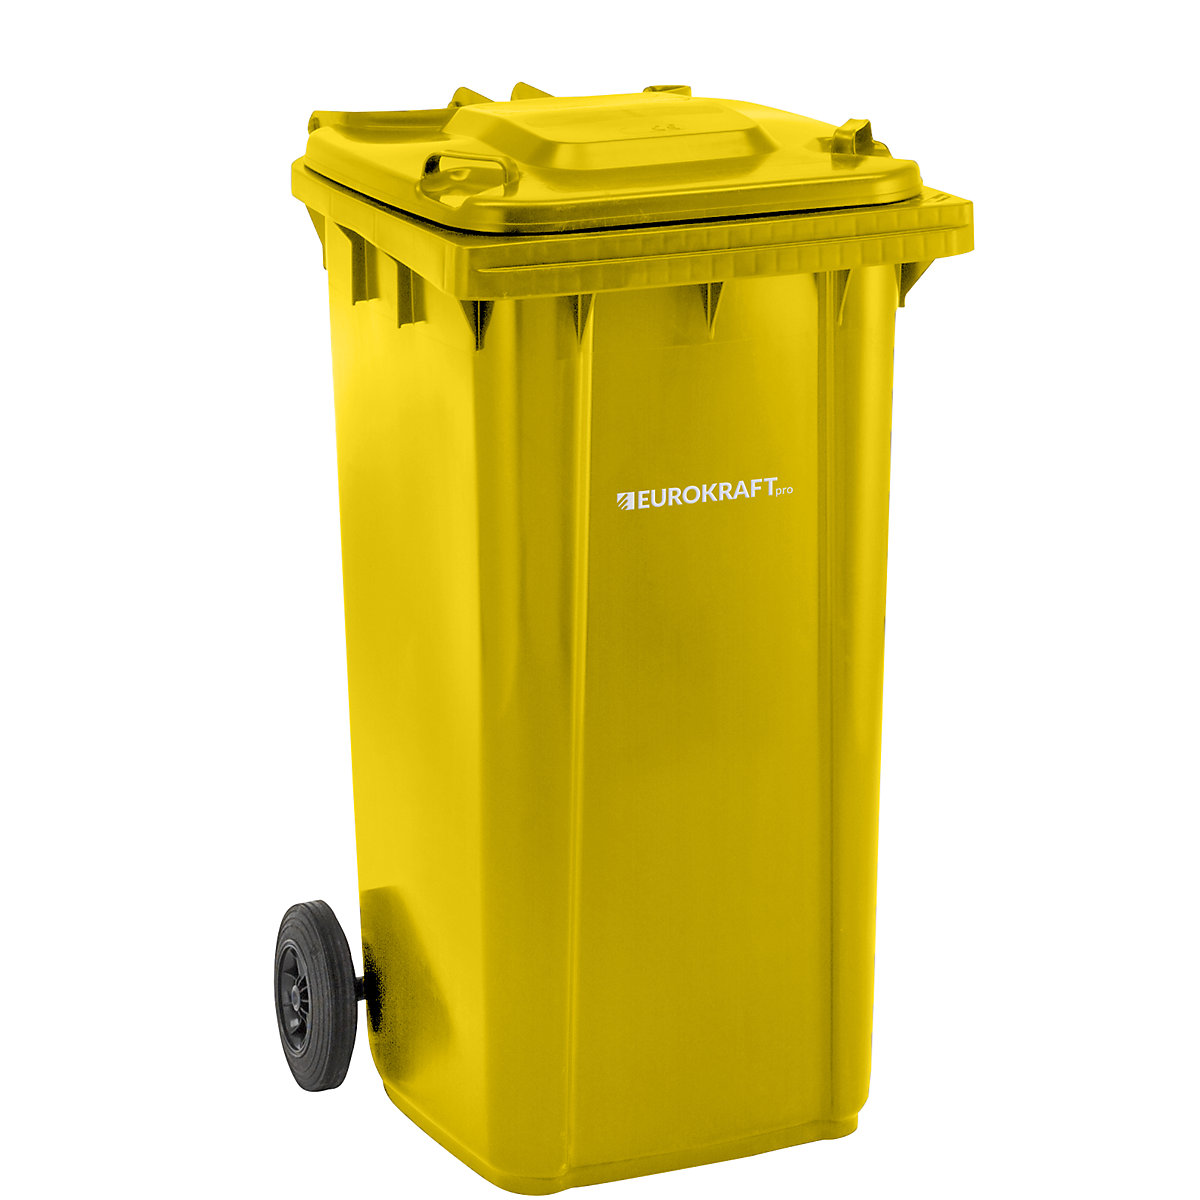 Contentor de lixo em plástico DIN EN 840 – eurokraft pro, volume 240 l, LxAxP 580 x 1100 x 740 mm, amarelo, a partir de 5 unid.-5